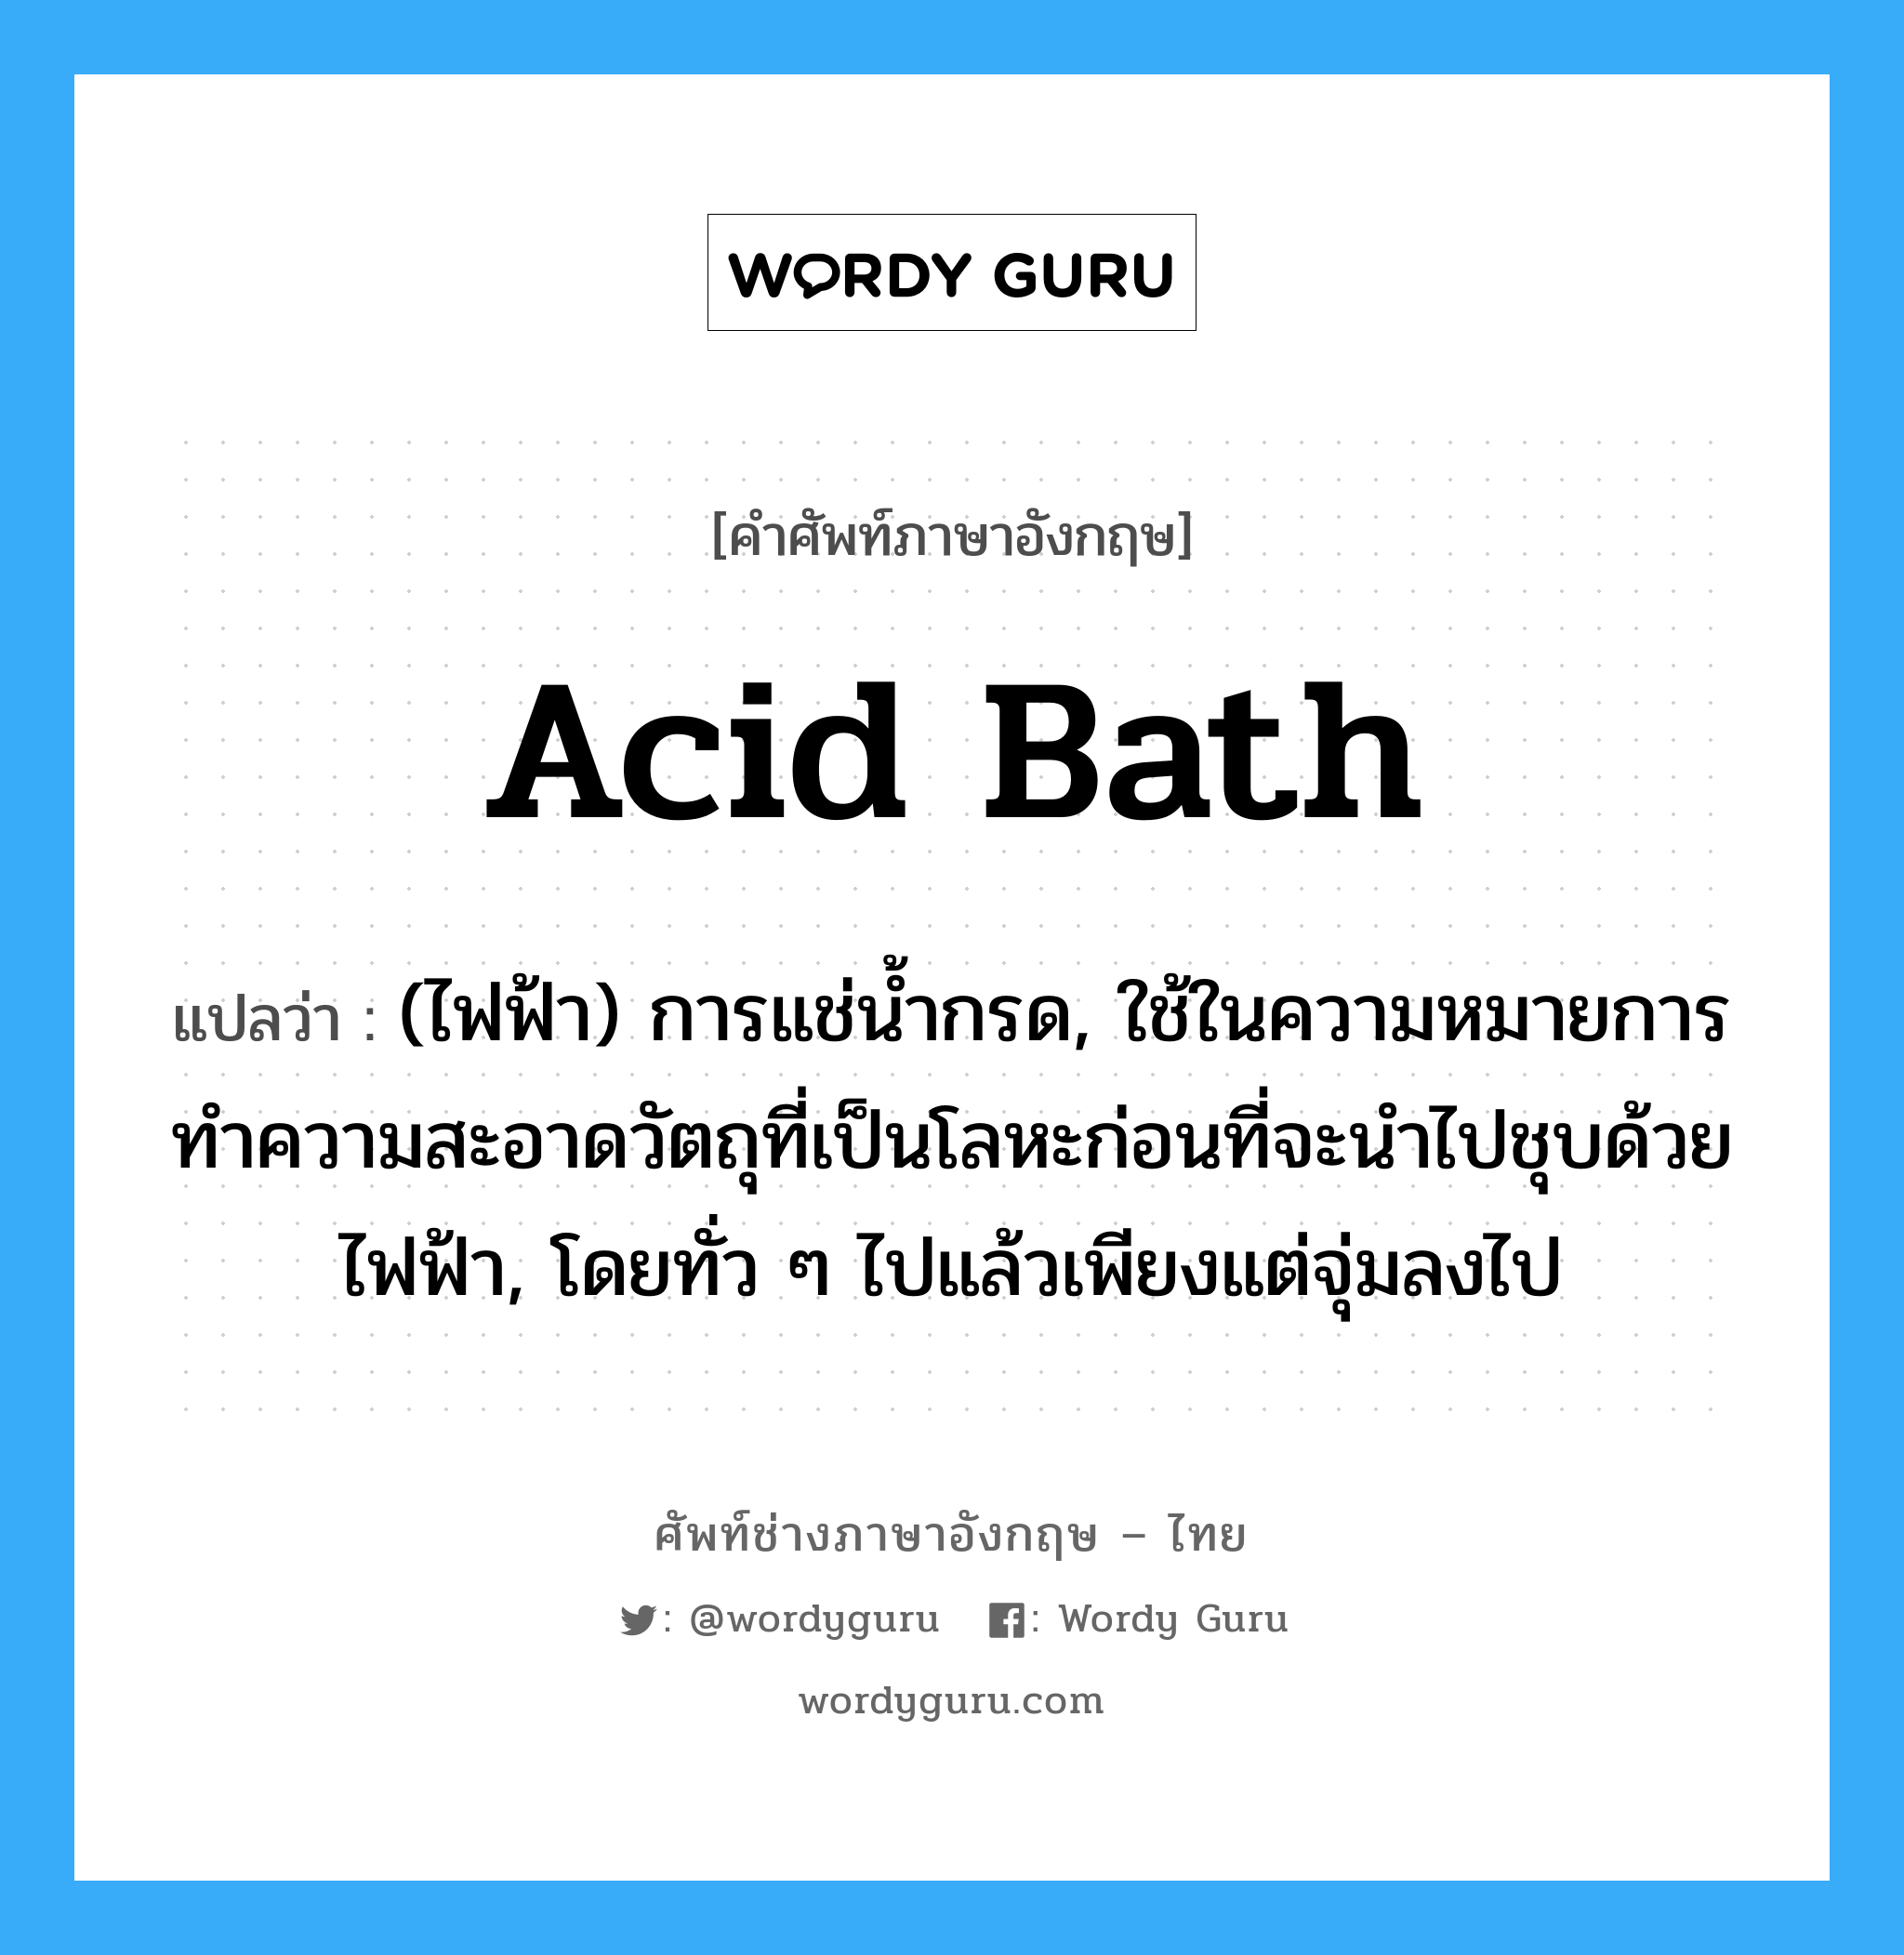 acid bath แปลว่า?, คำศัพท์ช่างภาษาอังกฤษ - ไทย acid bath คำศัพท์ภาษาอังกฤษ acid bath แปลว่า (ไฟฟ้า) การแช่น้ำกรด, ใช้ในความหมายการทำความสะอาดวัตถุที่เป็นโลหะก่อนที่จะนำไปชุบด้วยไฟฟ้า, โดยทั่ว ๆ ไปแล้วเพียงแต่จุ่มลงไป